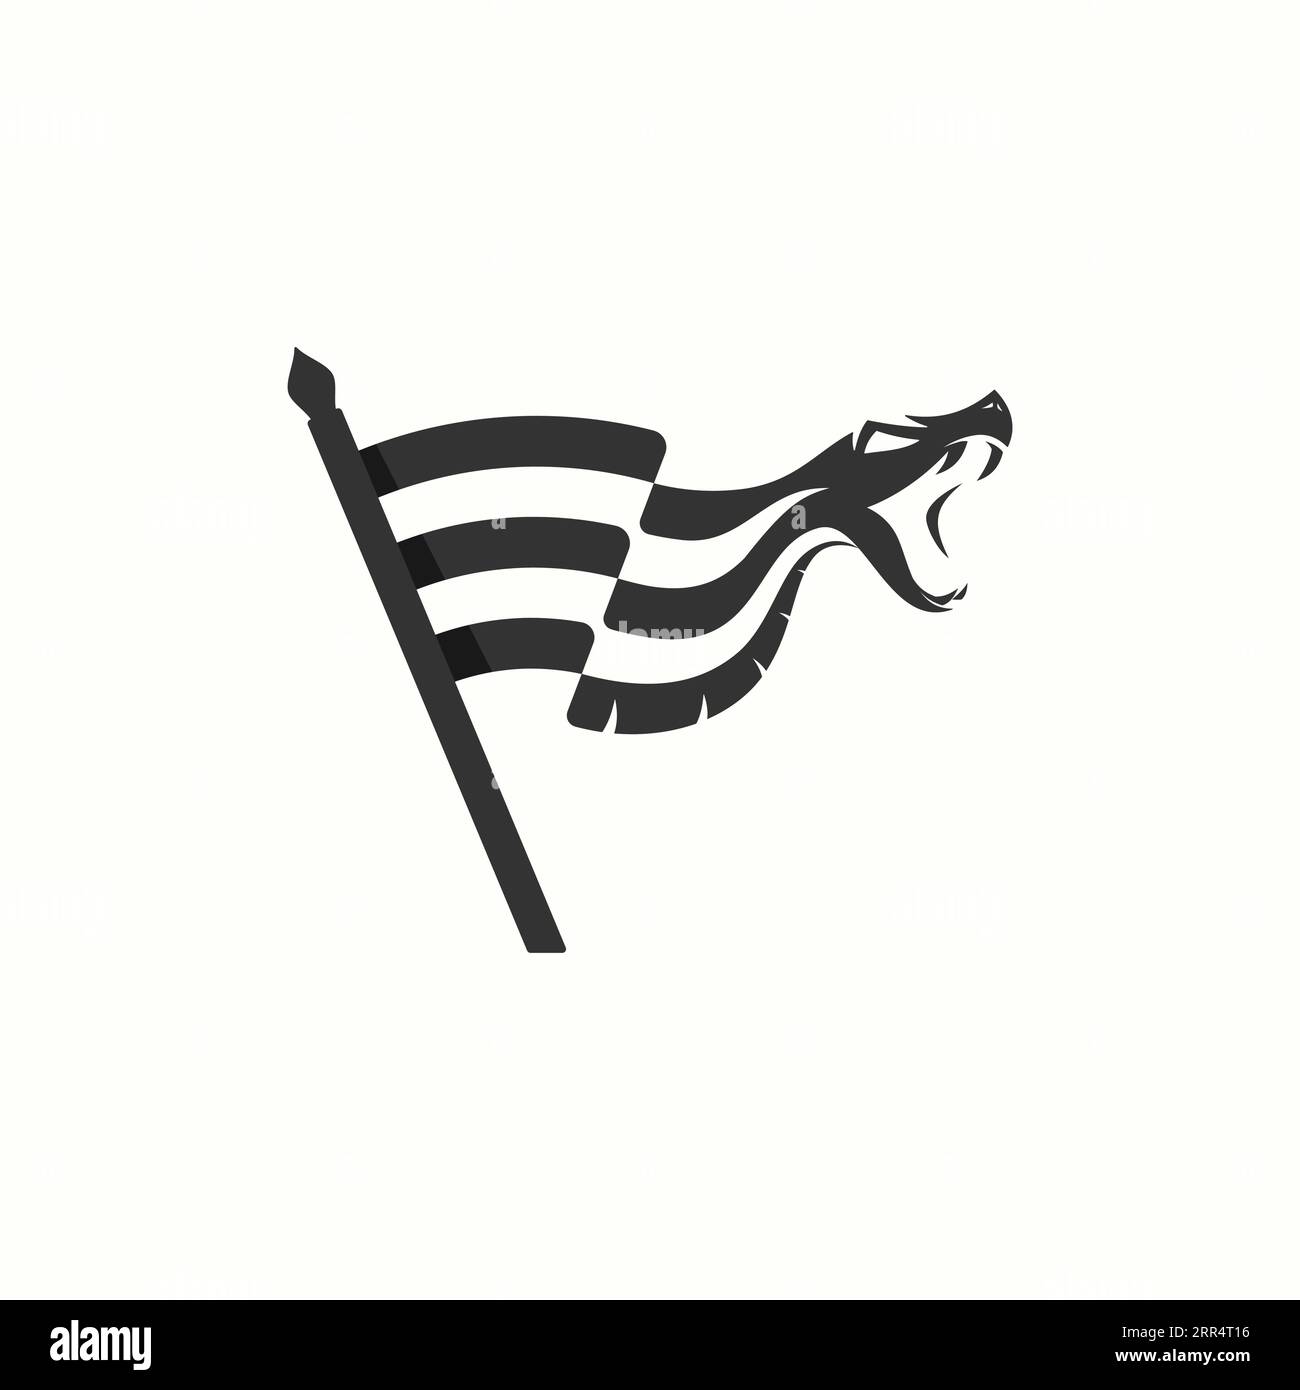 Icona moderna con logo Viper, design vettoriale. Illustrazione vettoriale Illustrazione Vettoriale